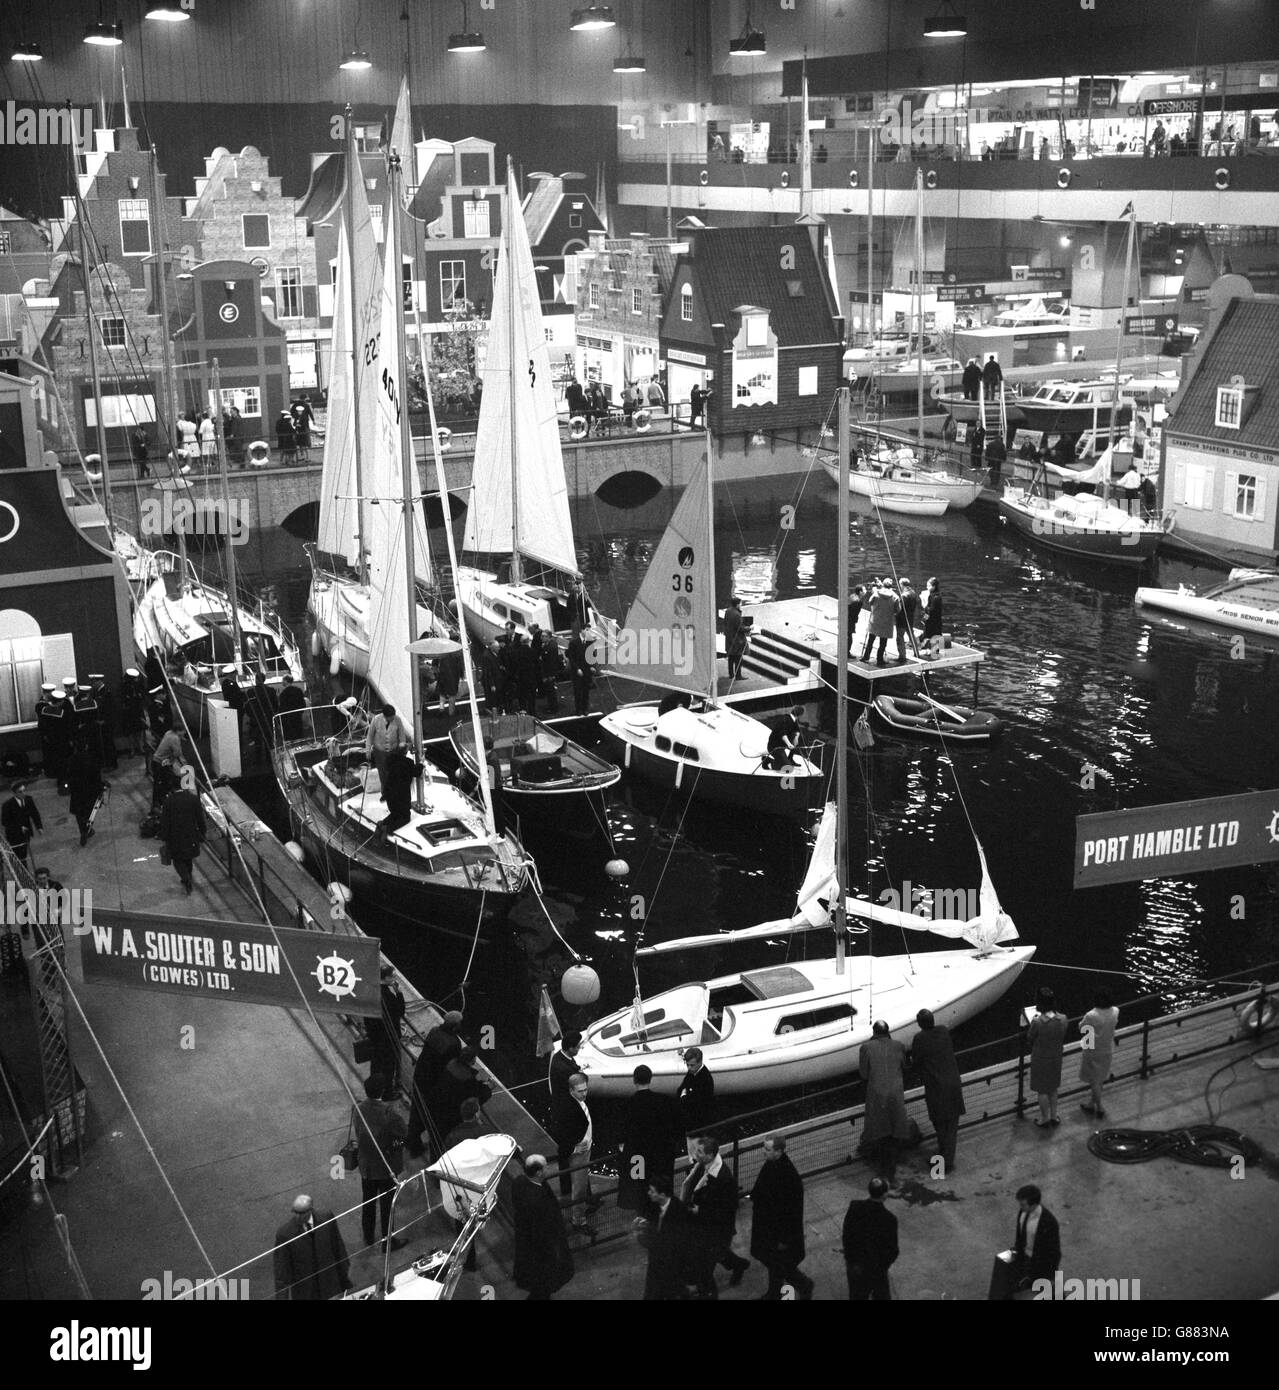 Eine Amsterdamer Szene mit Booten im Hafen ist das zentrale Thema, das im Earls Court, London, für die International Boat Show geschaffen wurde. Craft im Hafen sind einige von mehr als 600 Booten, die aus 17 Ländern für die Show geschickt wurden. Stockfoto